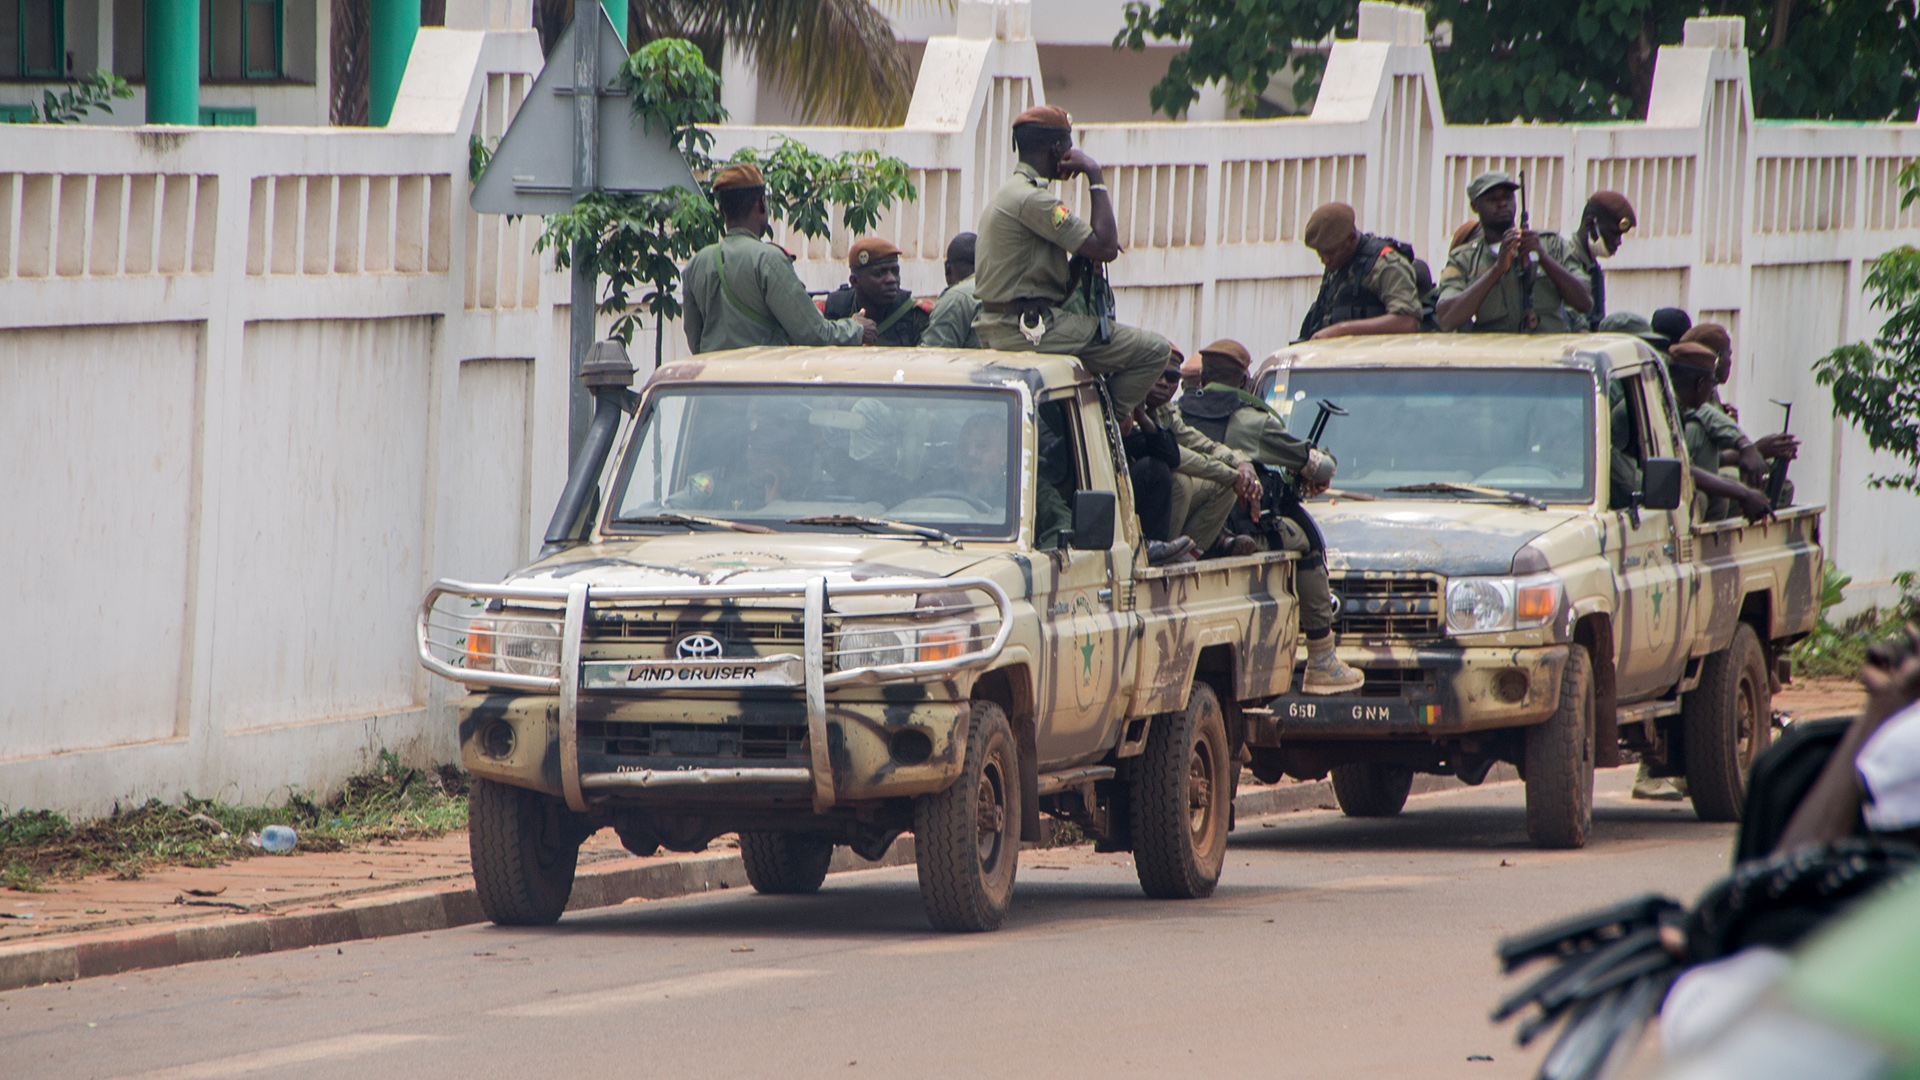 Soldaten patrouillieren in der Nähe des vom Militär verhafteten malischen Präsidenten Ibrahim Boubacar Keita, Archivbild vom 19.08.2020. | picture alliance / AA